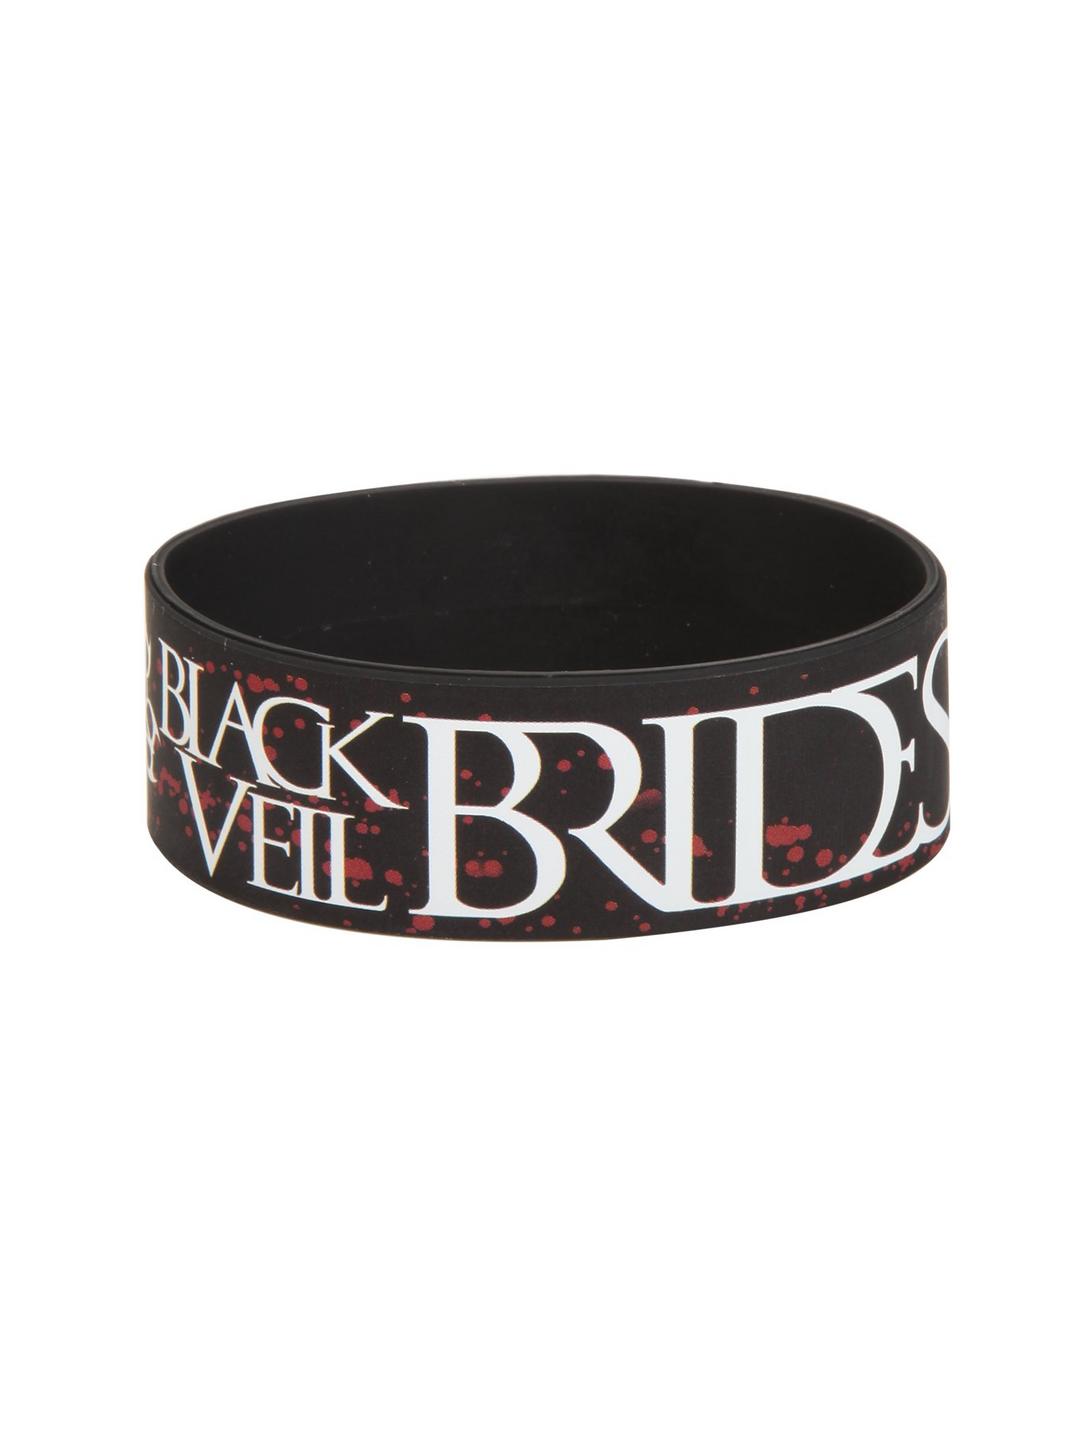 Black Veil Brides Group Photo Rubber Bracelet, , hi-res